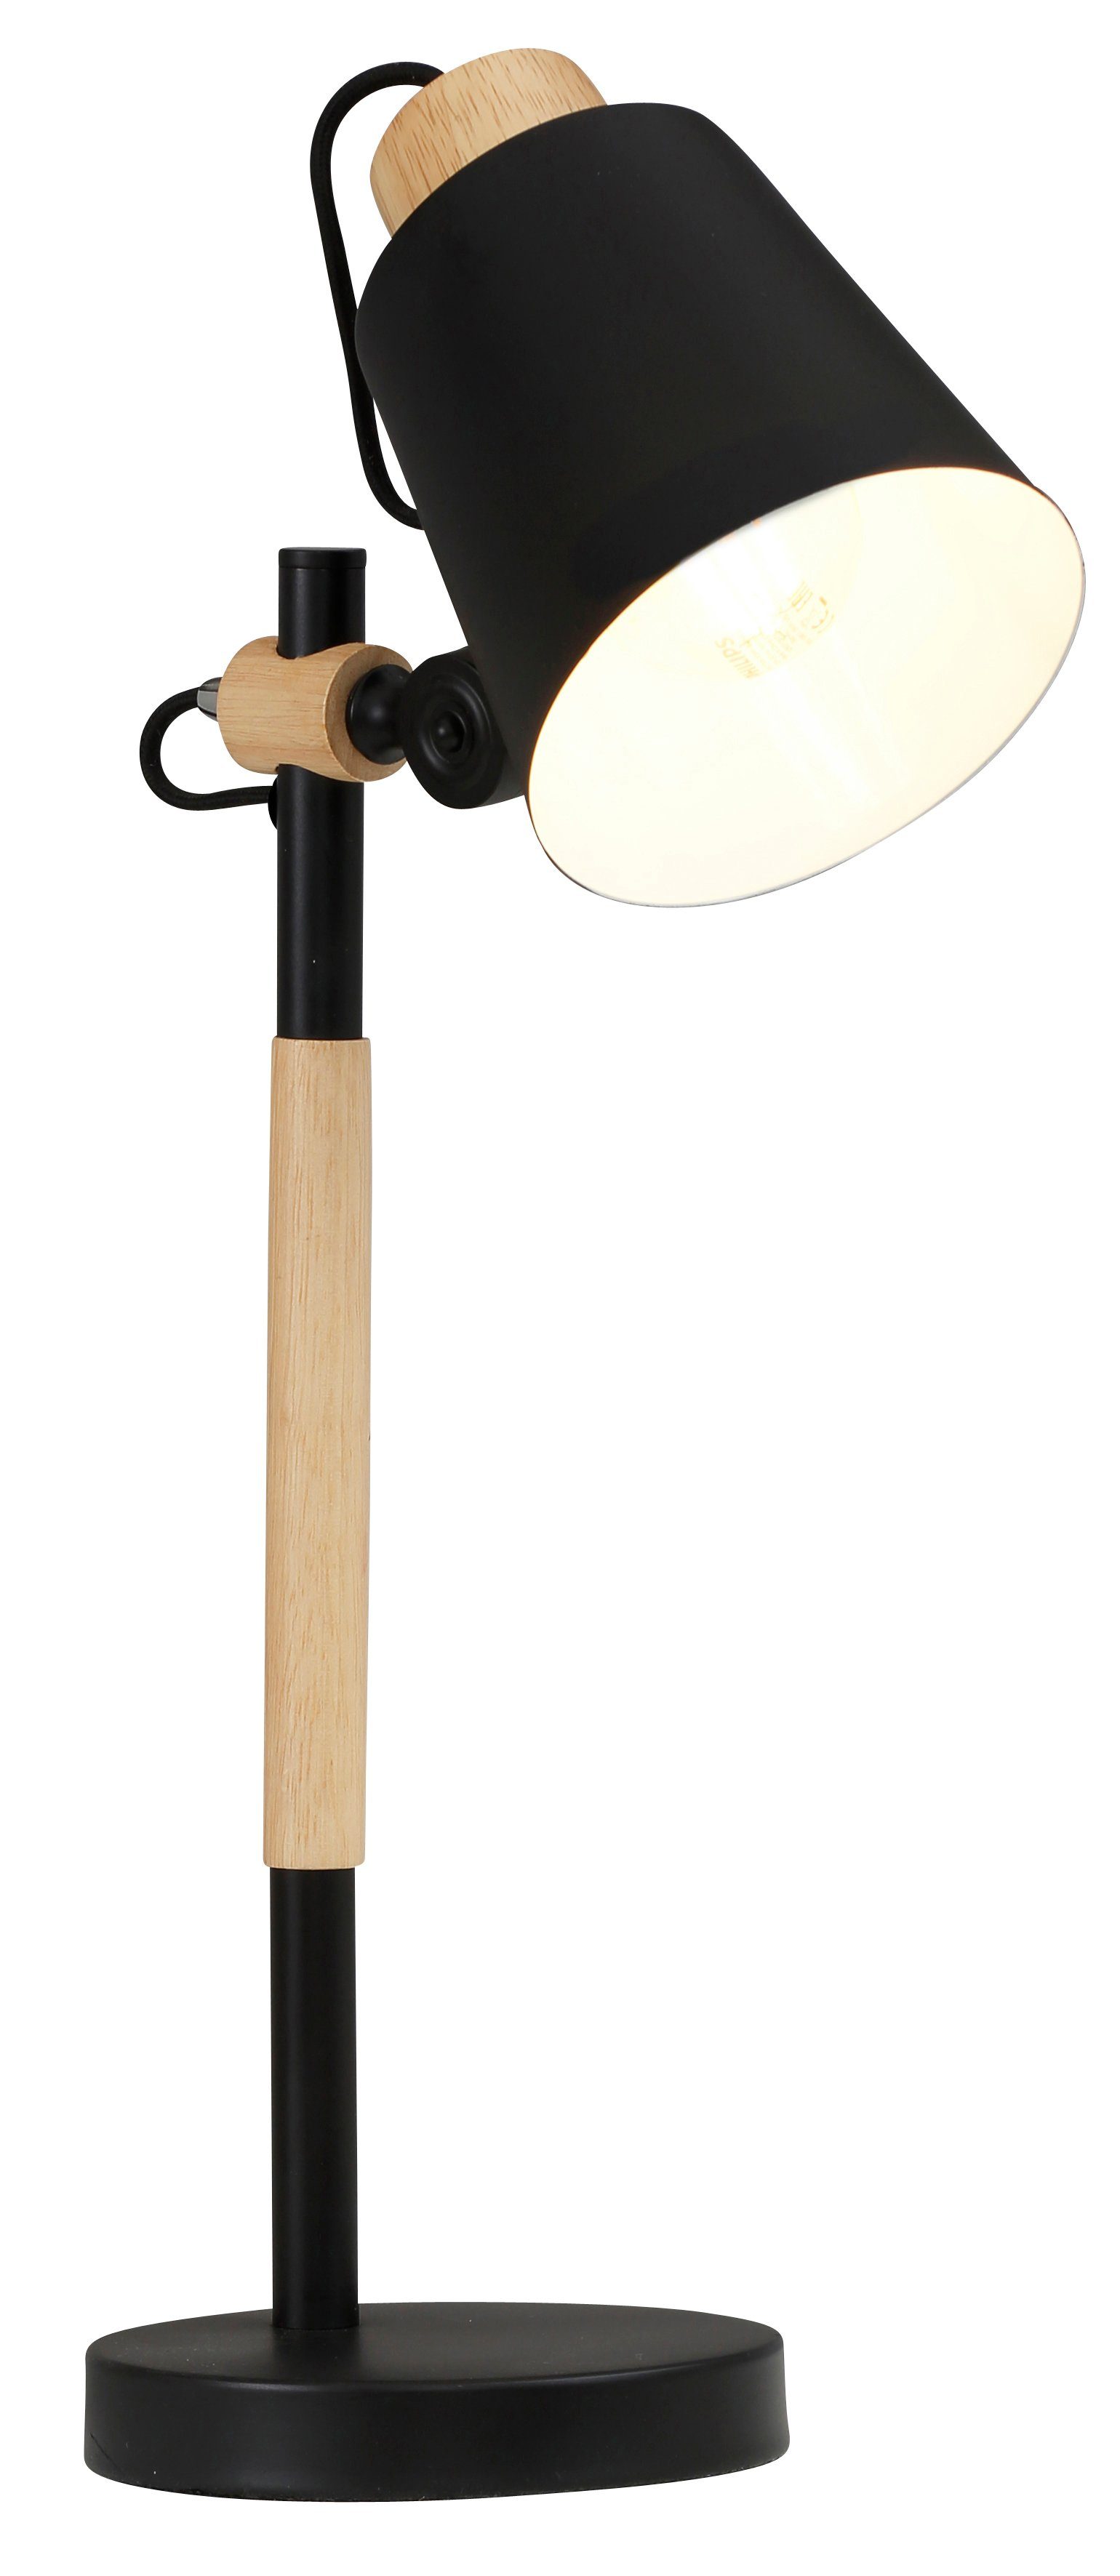 Tischlampe verstellbar Leselampe Glasschirm Schreibtischlampe Tischleuchte Holz 